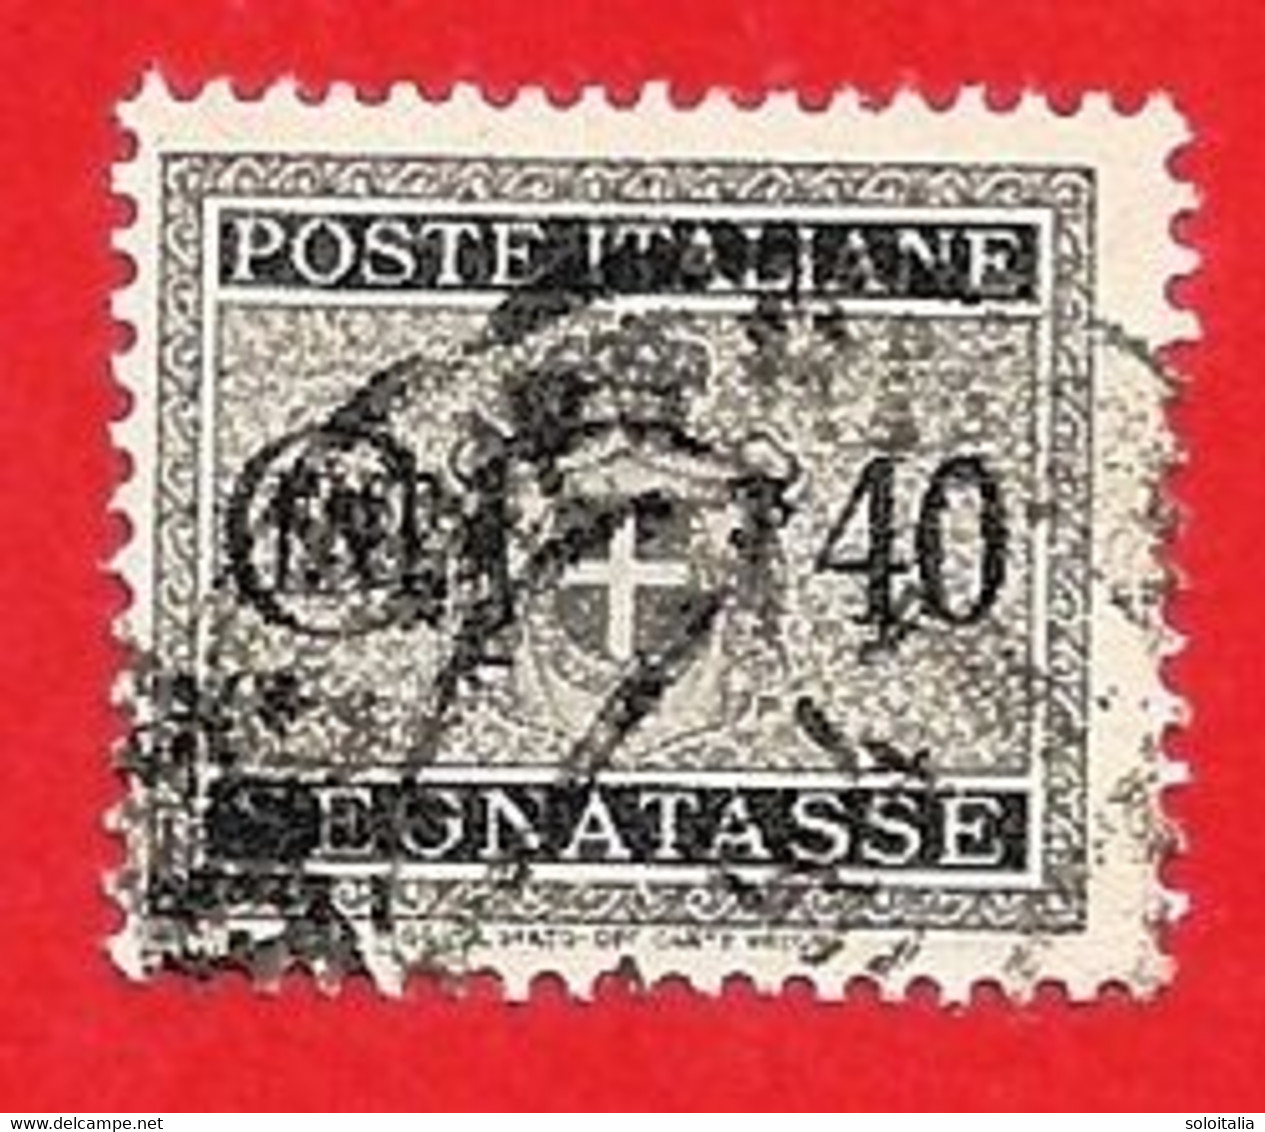 1945 (89) Segnatasse Stemma Senza Fasci Filigrana Ruota Cent. 40 Usato - Leggi Il Messaggio Del Venditore - Strafport